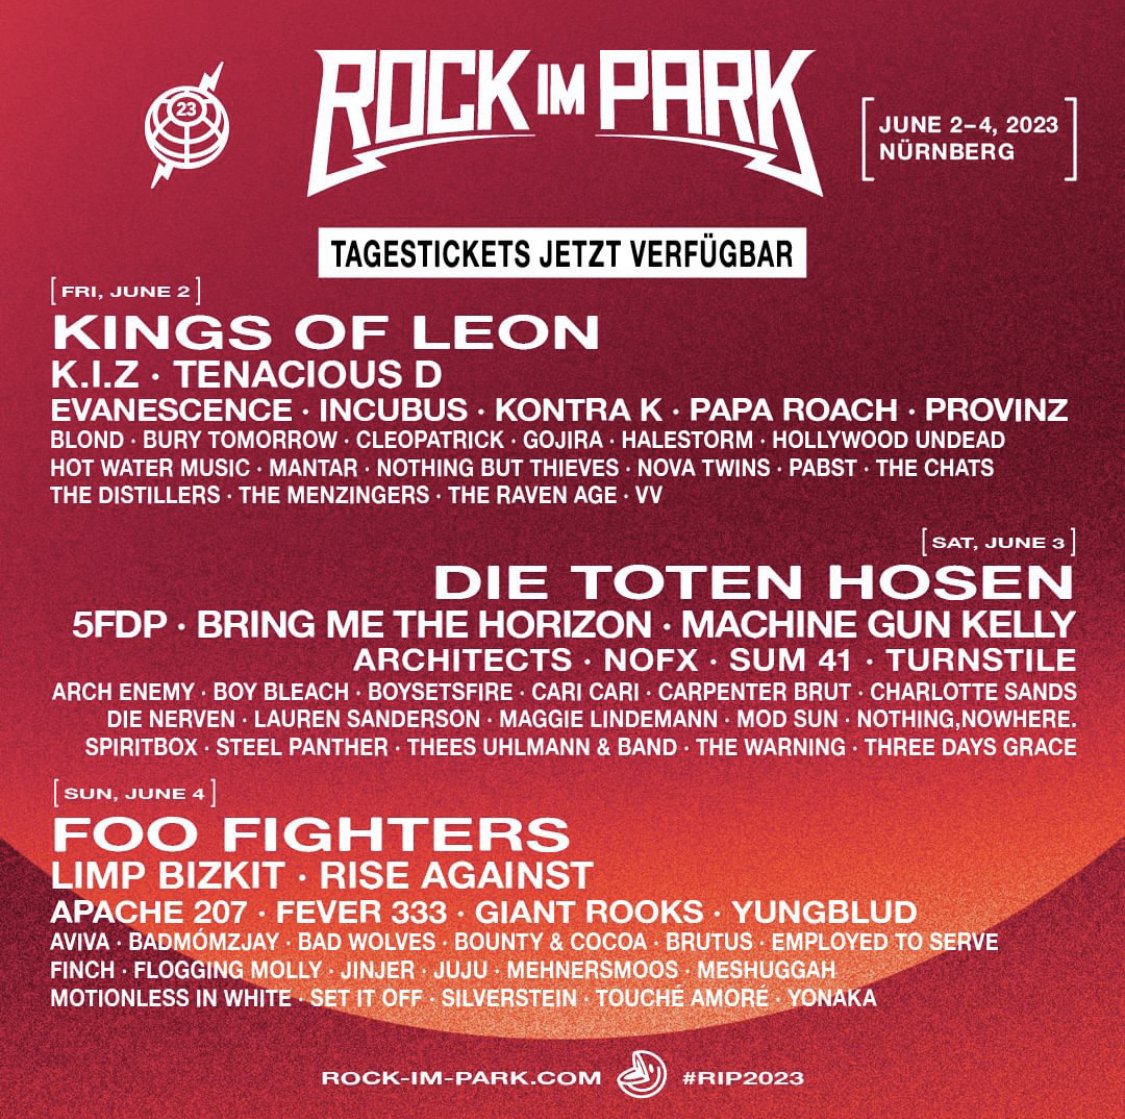 Rock im Park 2023 à Zeppelinfeld (Nuremberg) le 2 Jui 2023 | Last.fm